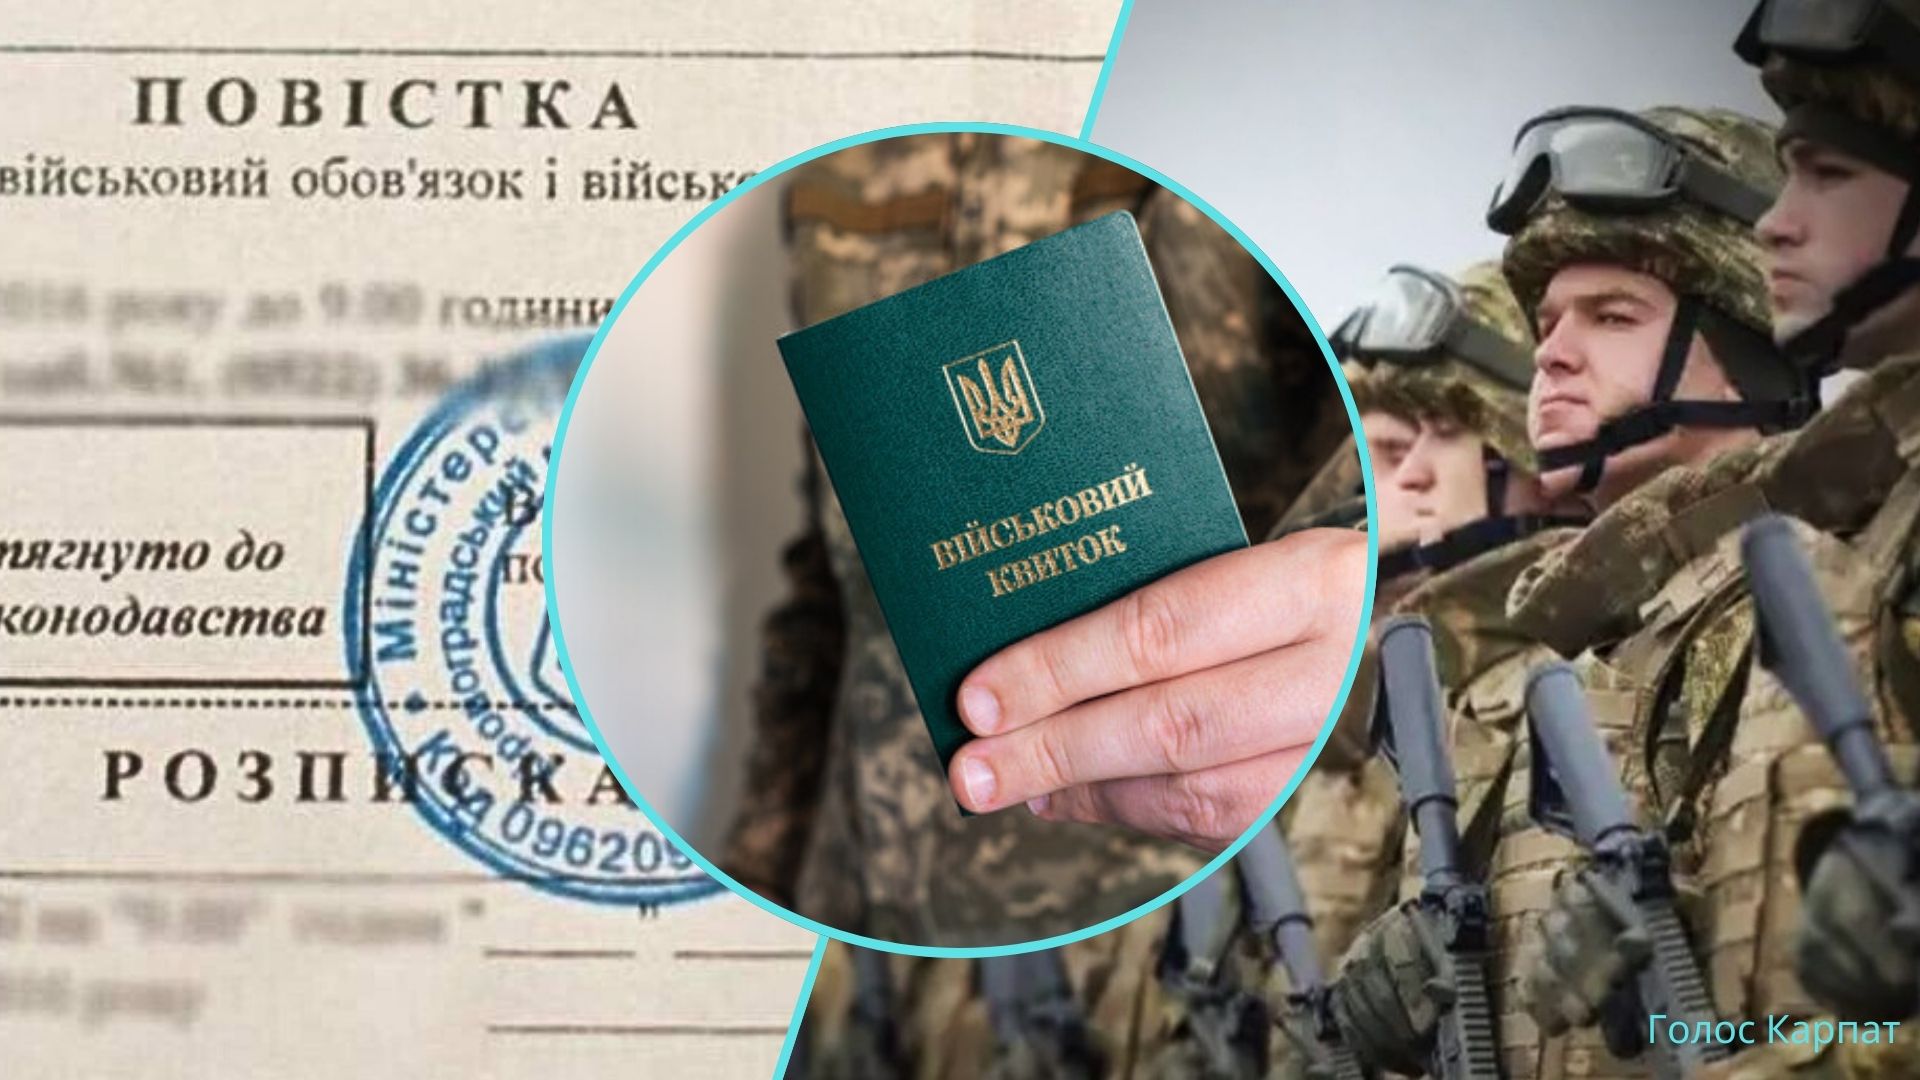 Ukrajna bírságot kíván kiszabni a katonai nyilvántartásba vétel szabályainak és a védelmi és mozgósítási jogszabályoknak a megsértése miatt.